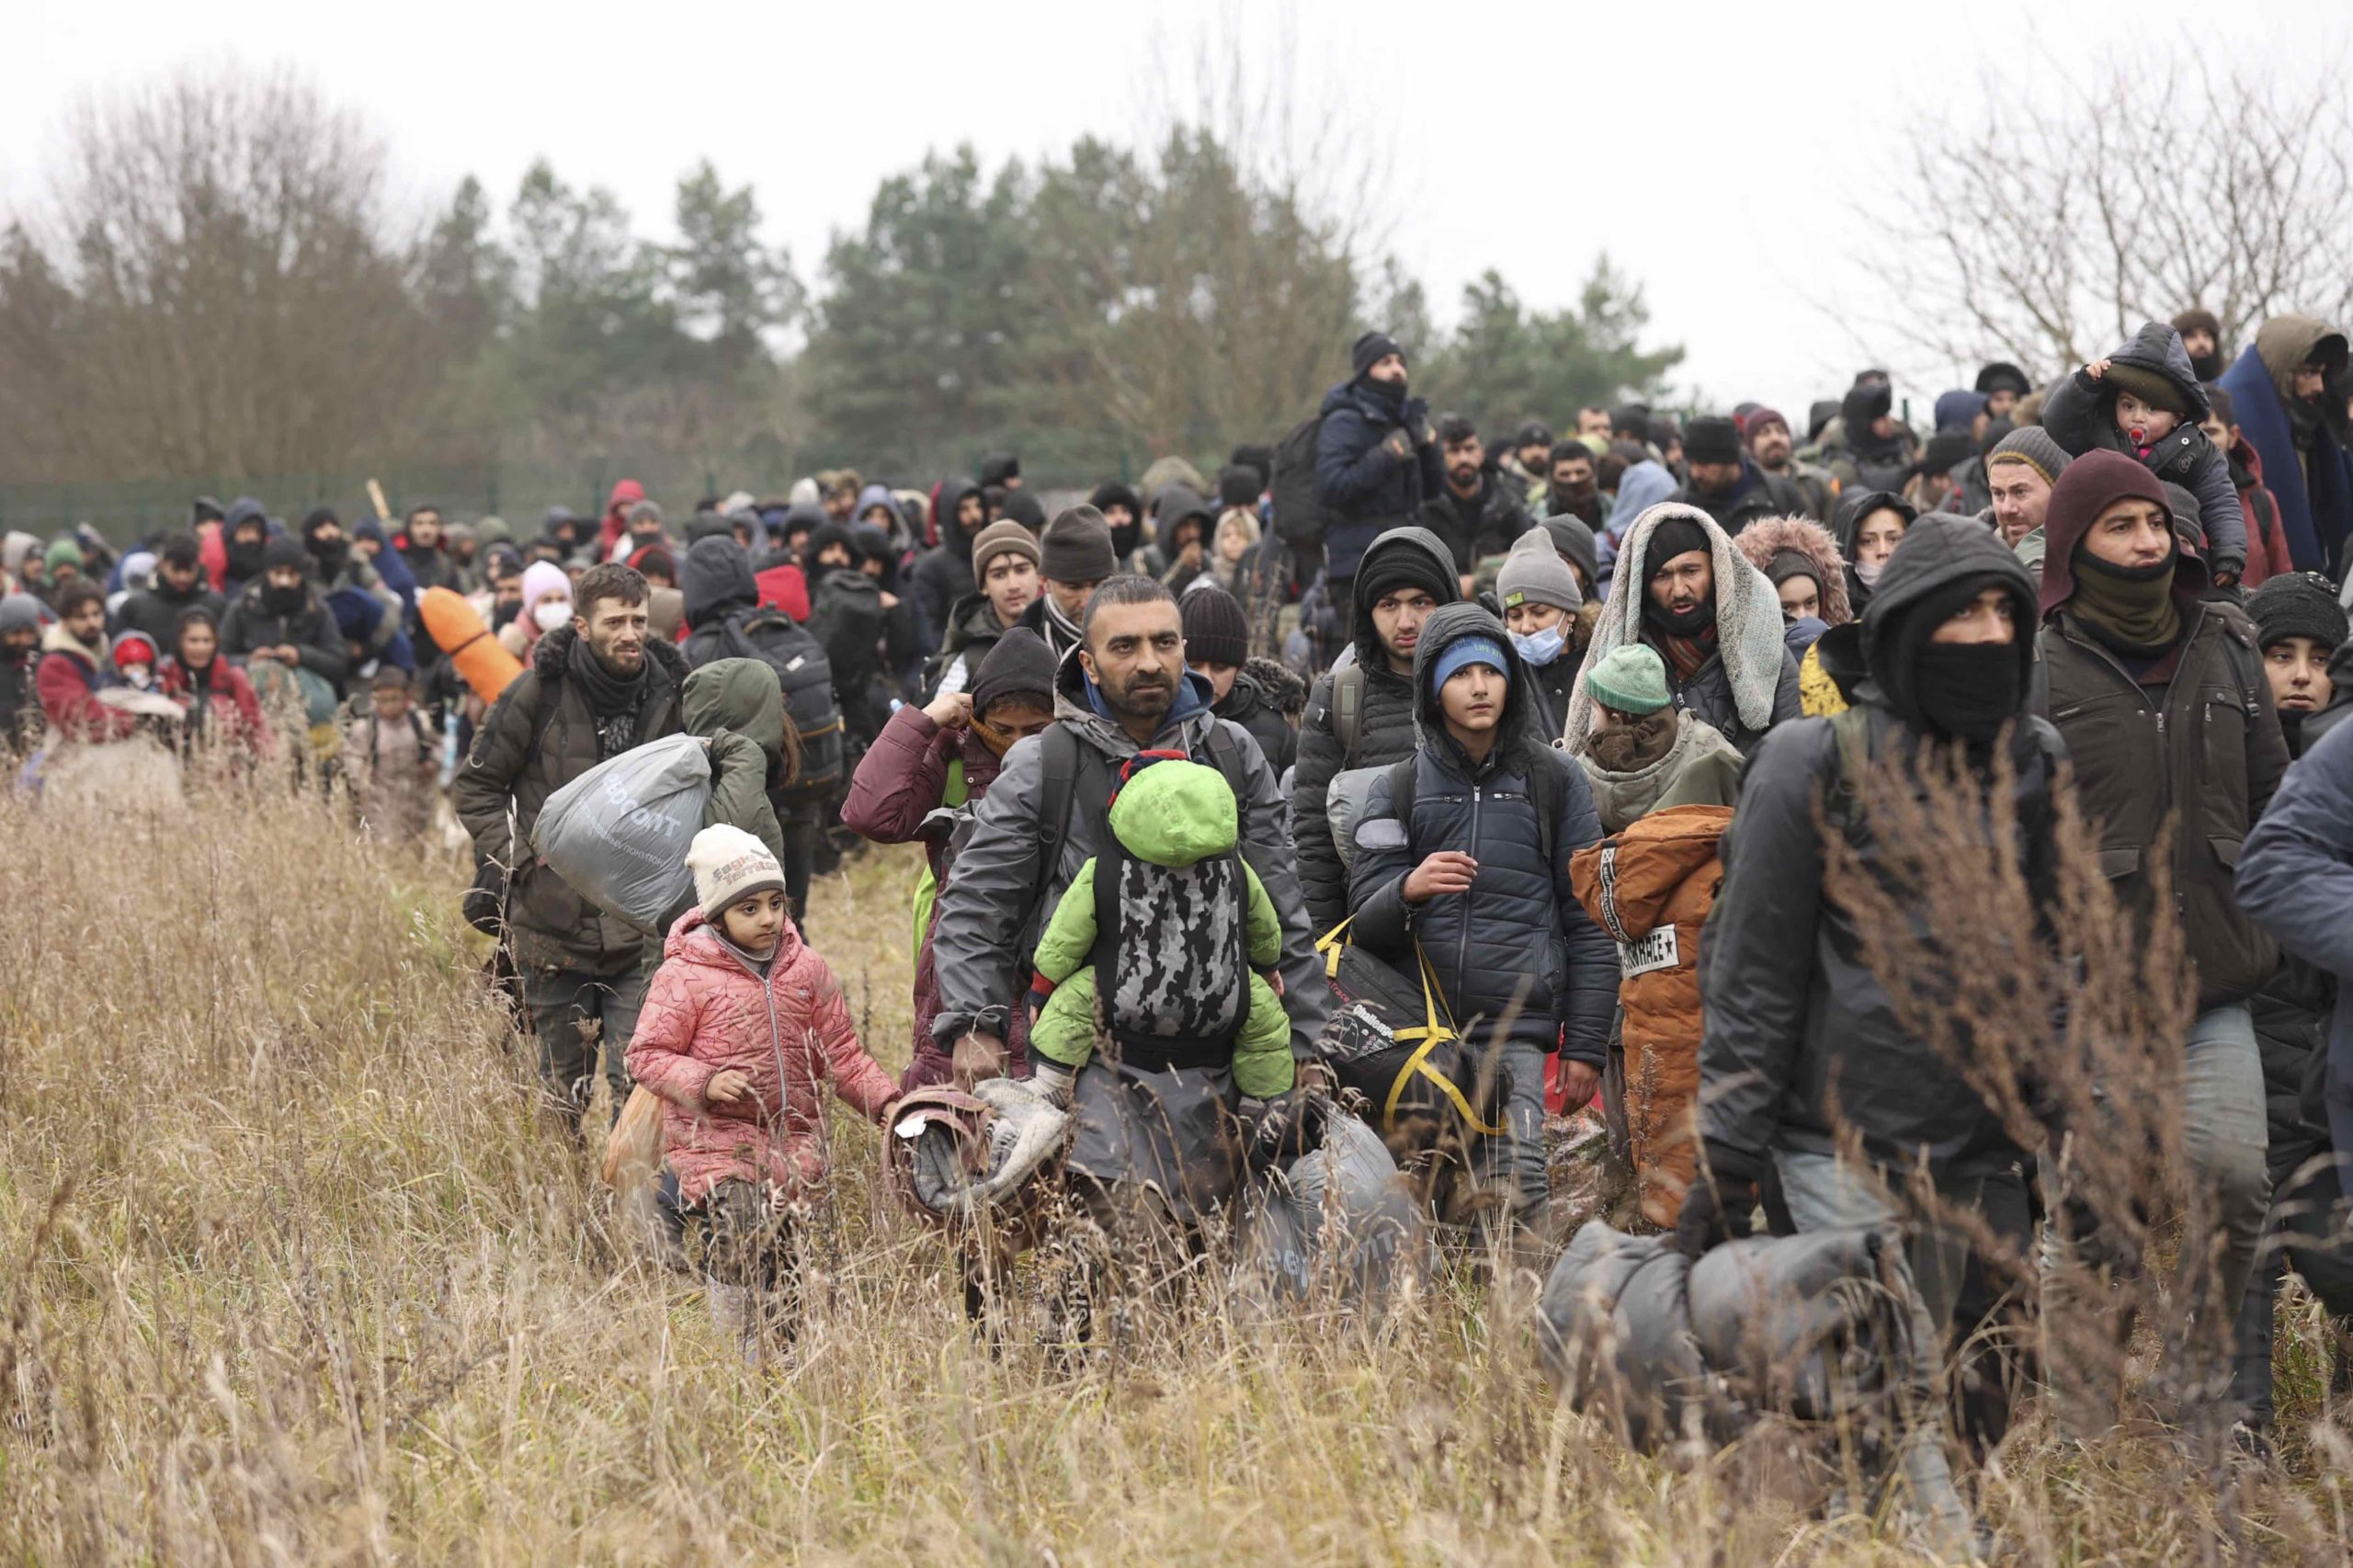 Grandes grupos de personas que huyen de los conflictos y la pobreza en Oriente Medio, procedentes en su mayoría de Irak, Siria y Afganistán, se han desplazado hasta Bielorrusia con el objetivo de tratar de cruzar la frontera hacia la Unión Europea. Las tensiones entre Bielorrusia, Polonia y otros países de la UE se han ido intensificando a medida que han incrementado los flujos migratorios en esta área. (Oksana ManchukTASS via Getty Images)